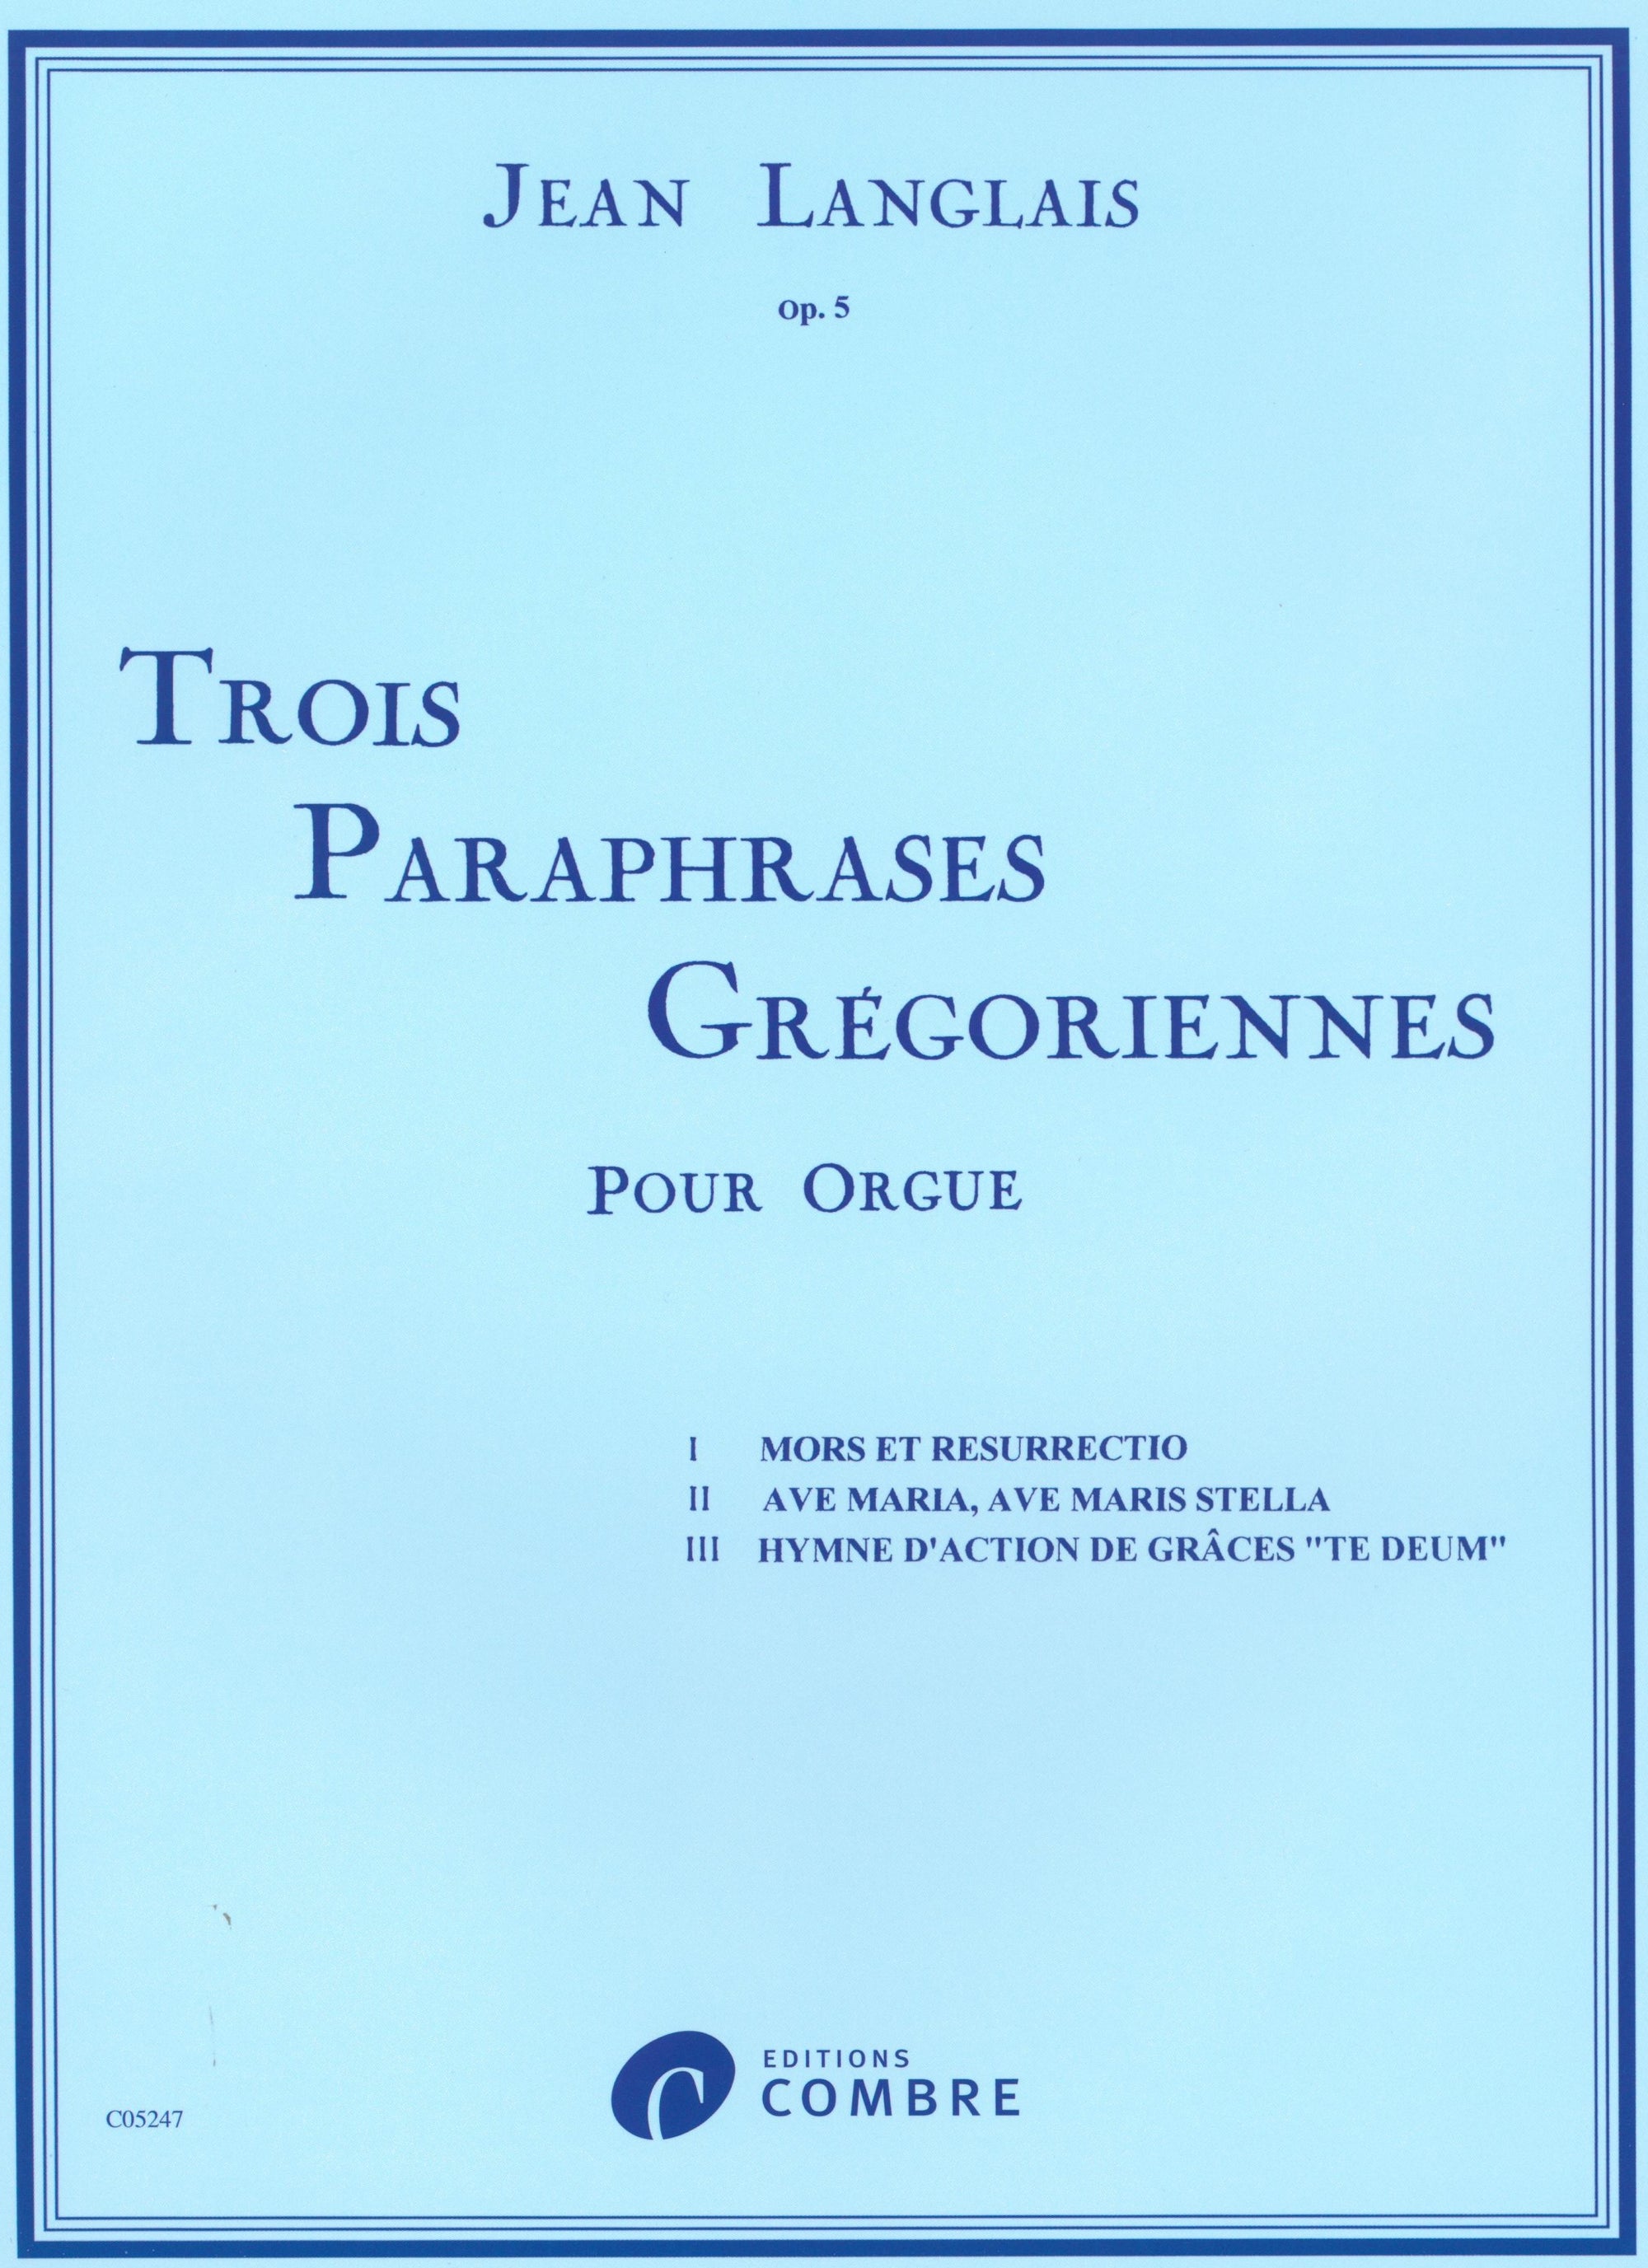 Langlais: Paraphrases grégoriennes, Op. 5